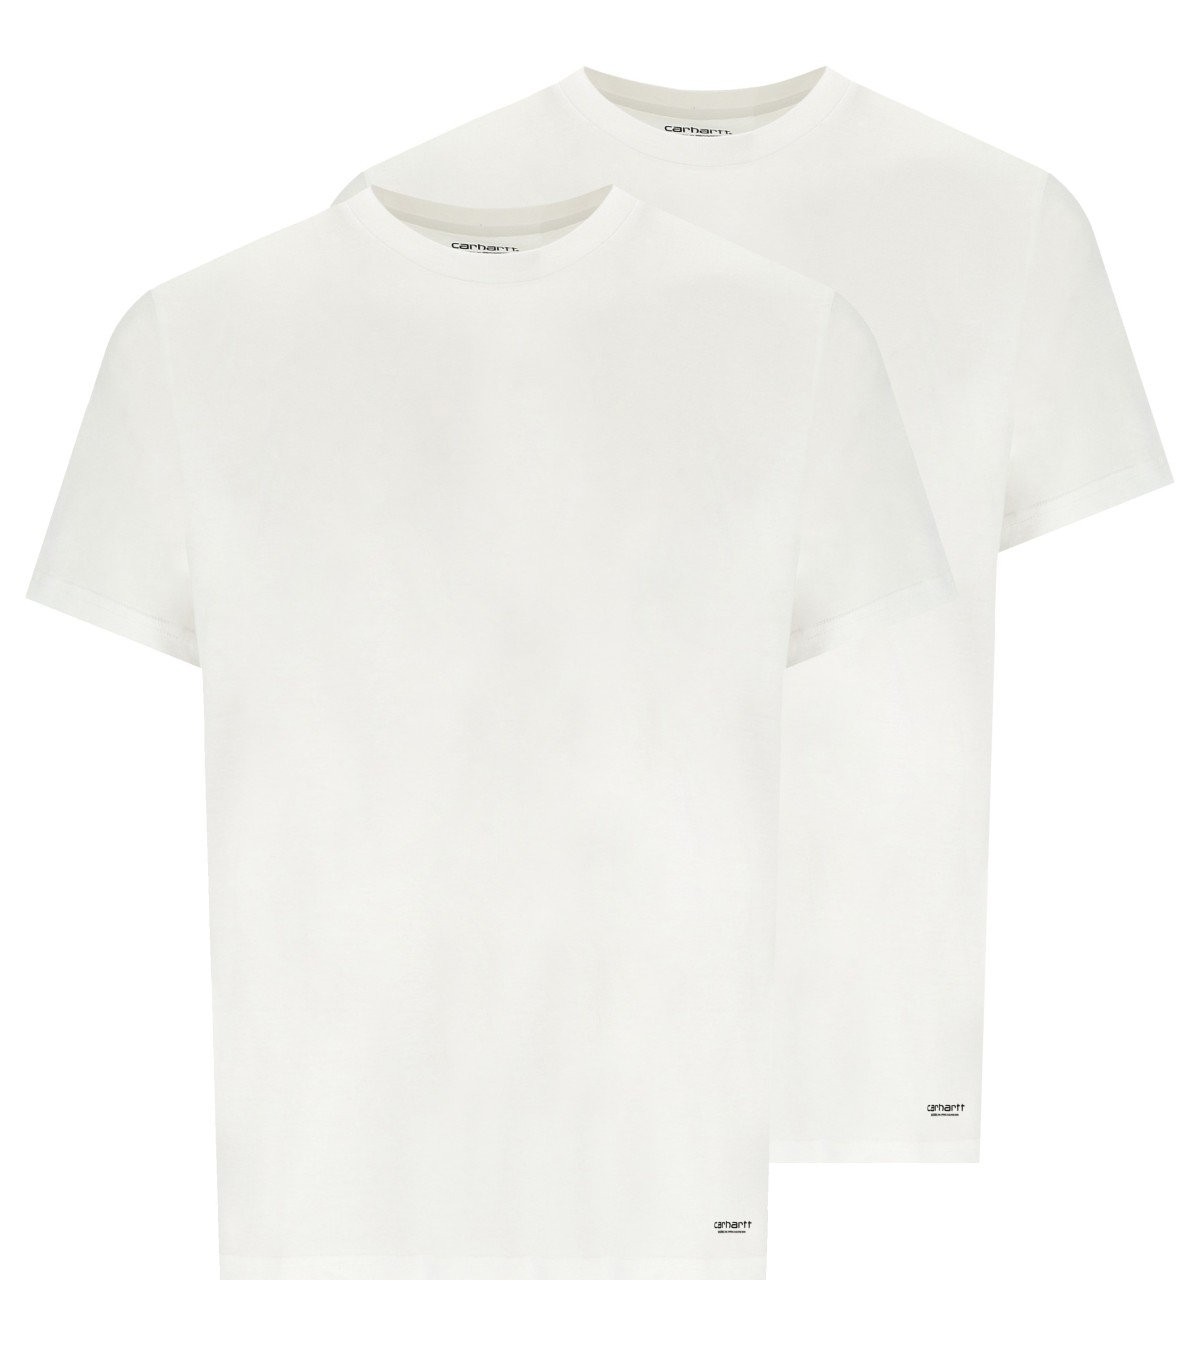 Carhartt Standard T-shirt White